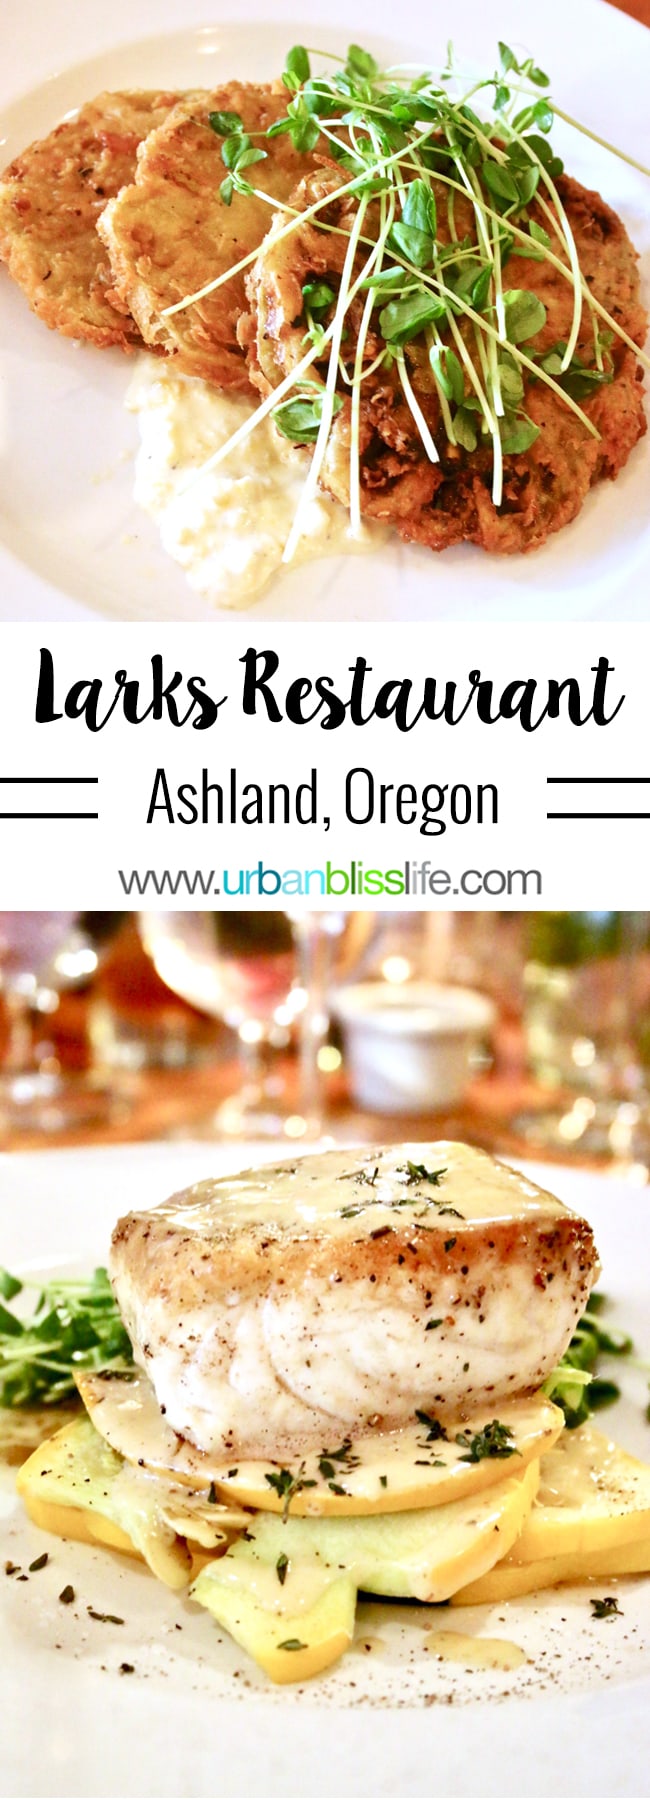 Larks Restaurant in Ashland, Oregon. Restaurant review on UrbanBlissLife.com